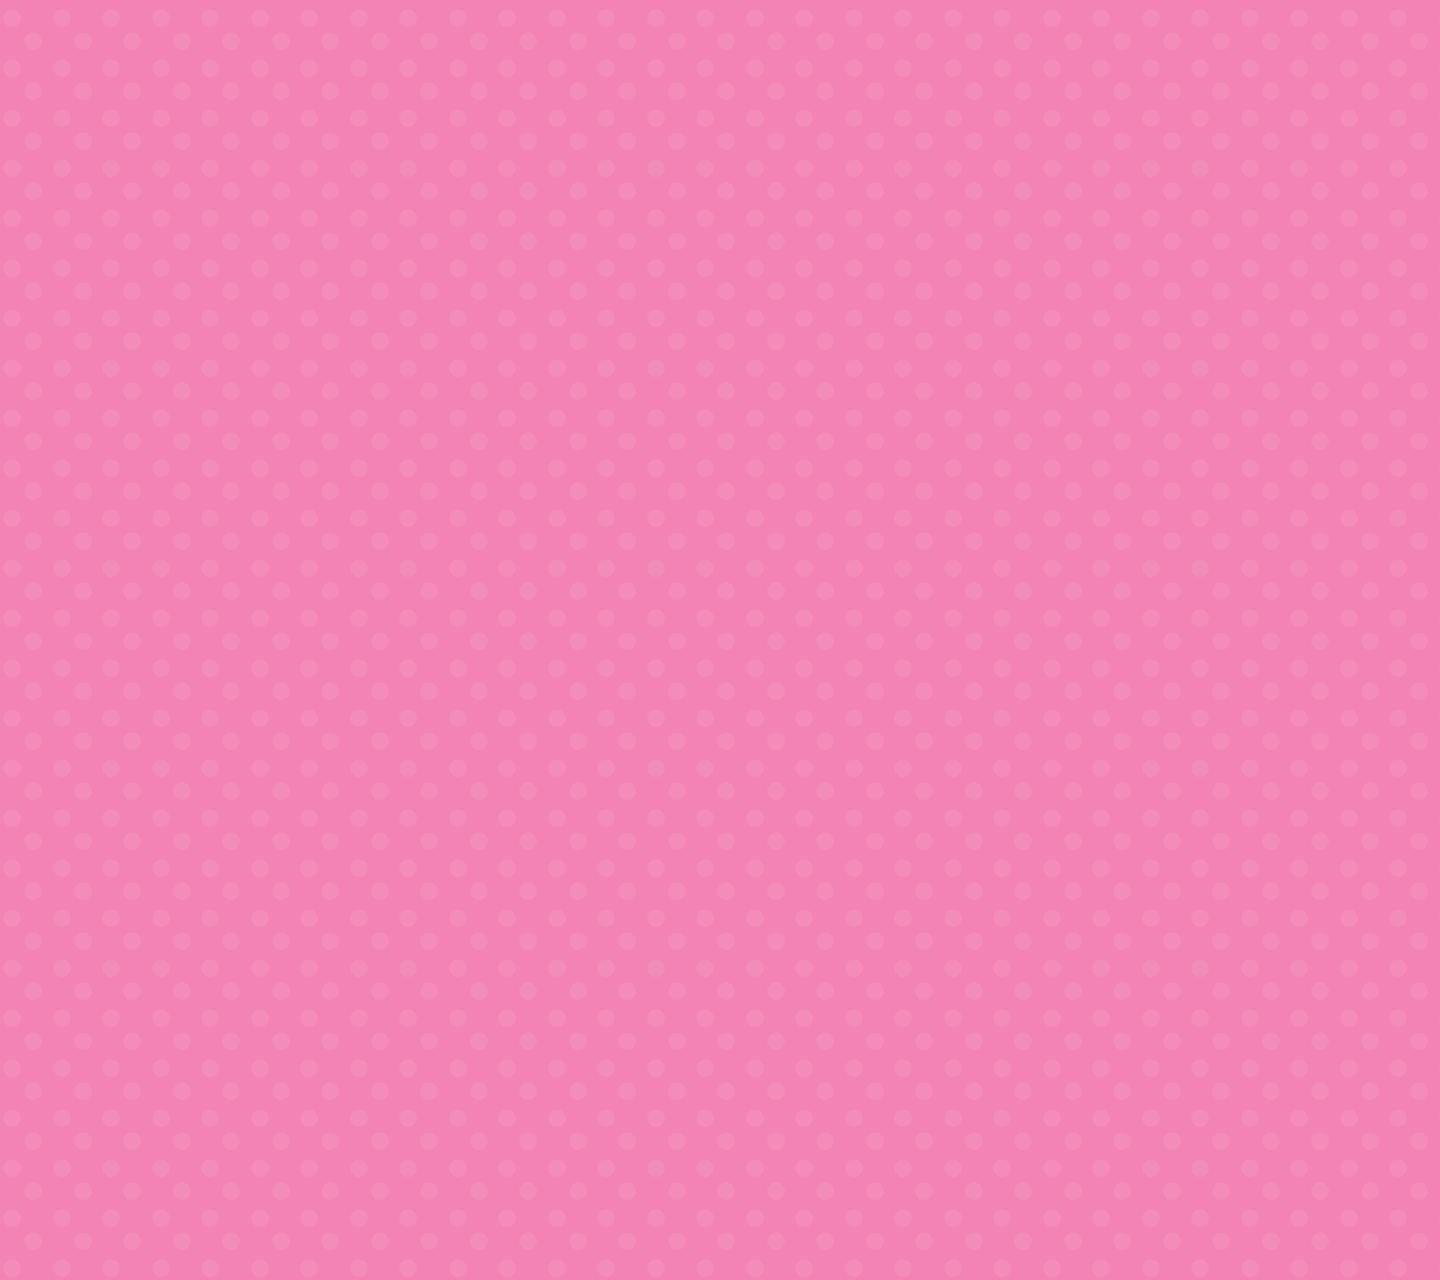 Cute Pink Polka Dot HTC Rezound Vigor Wallpaper by cupcakekitten20